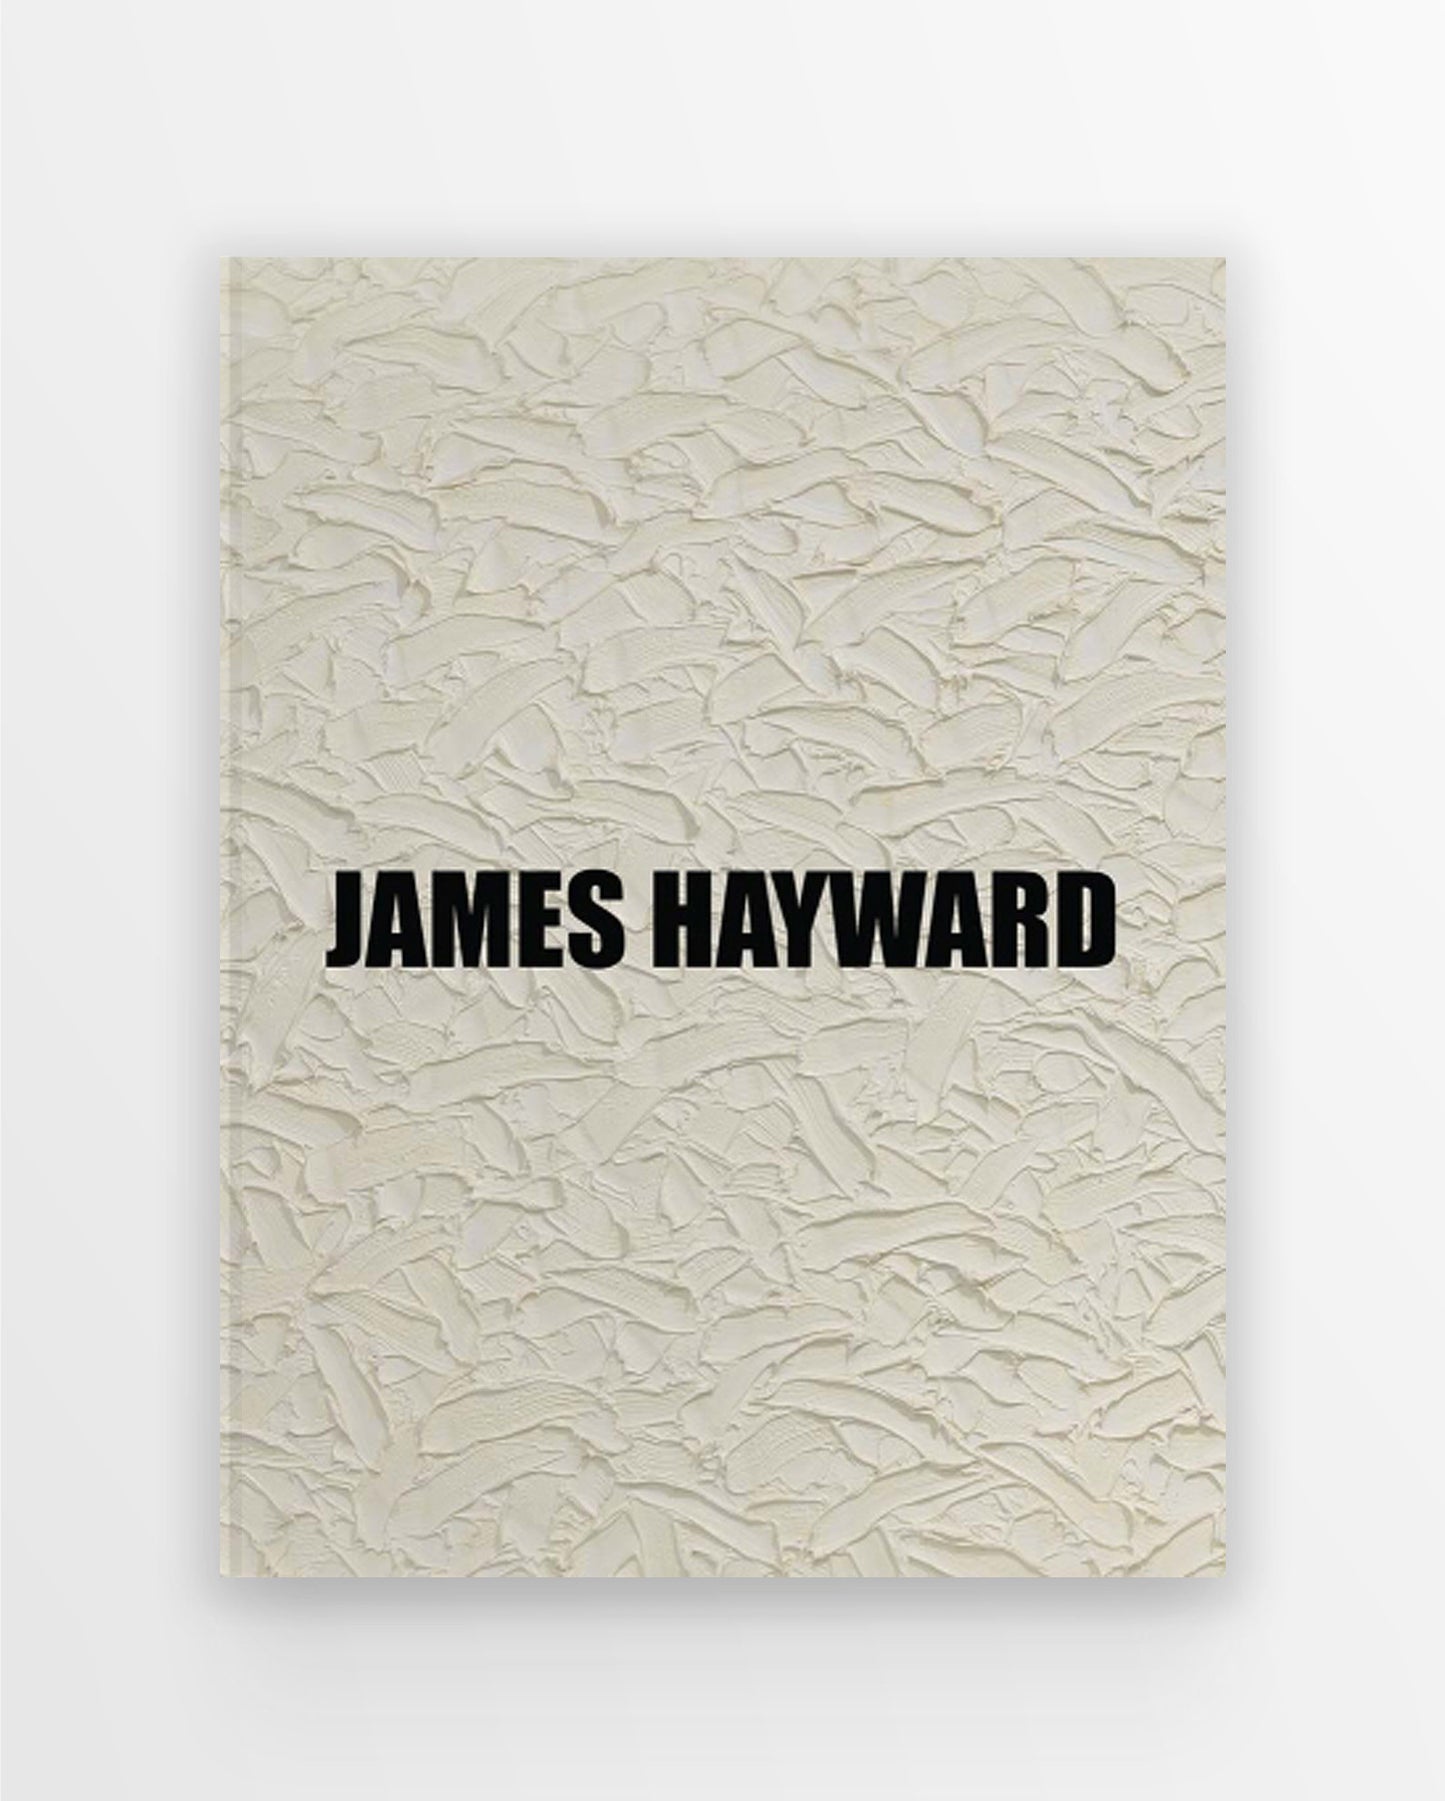 James Hayward